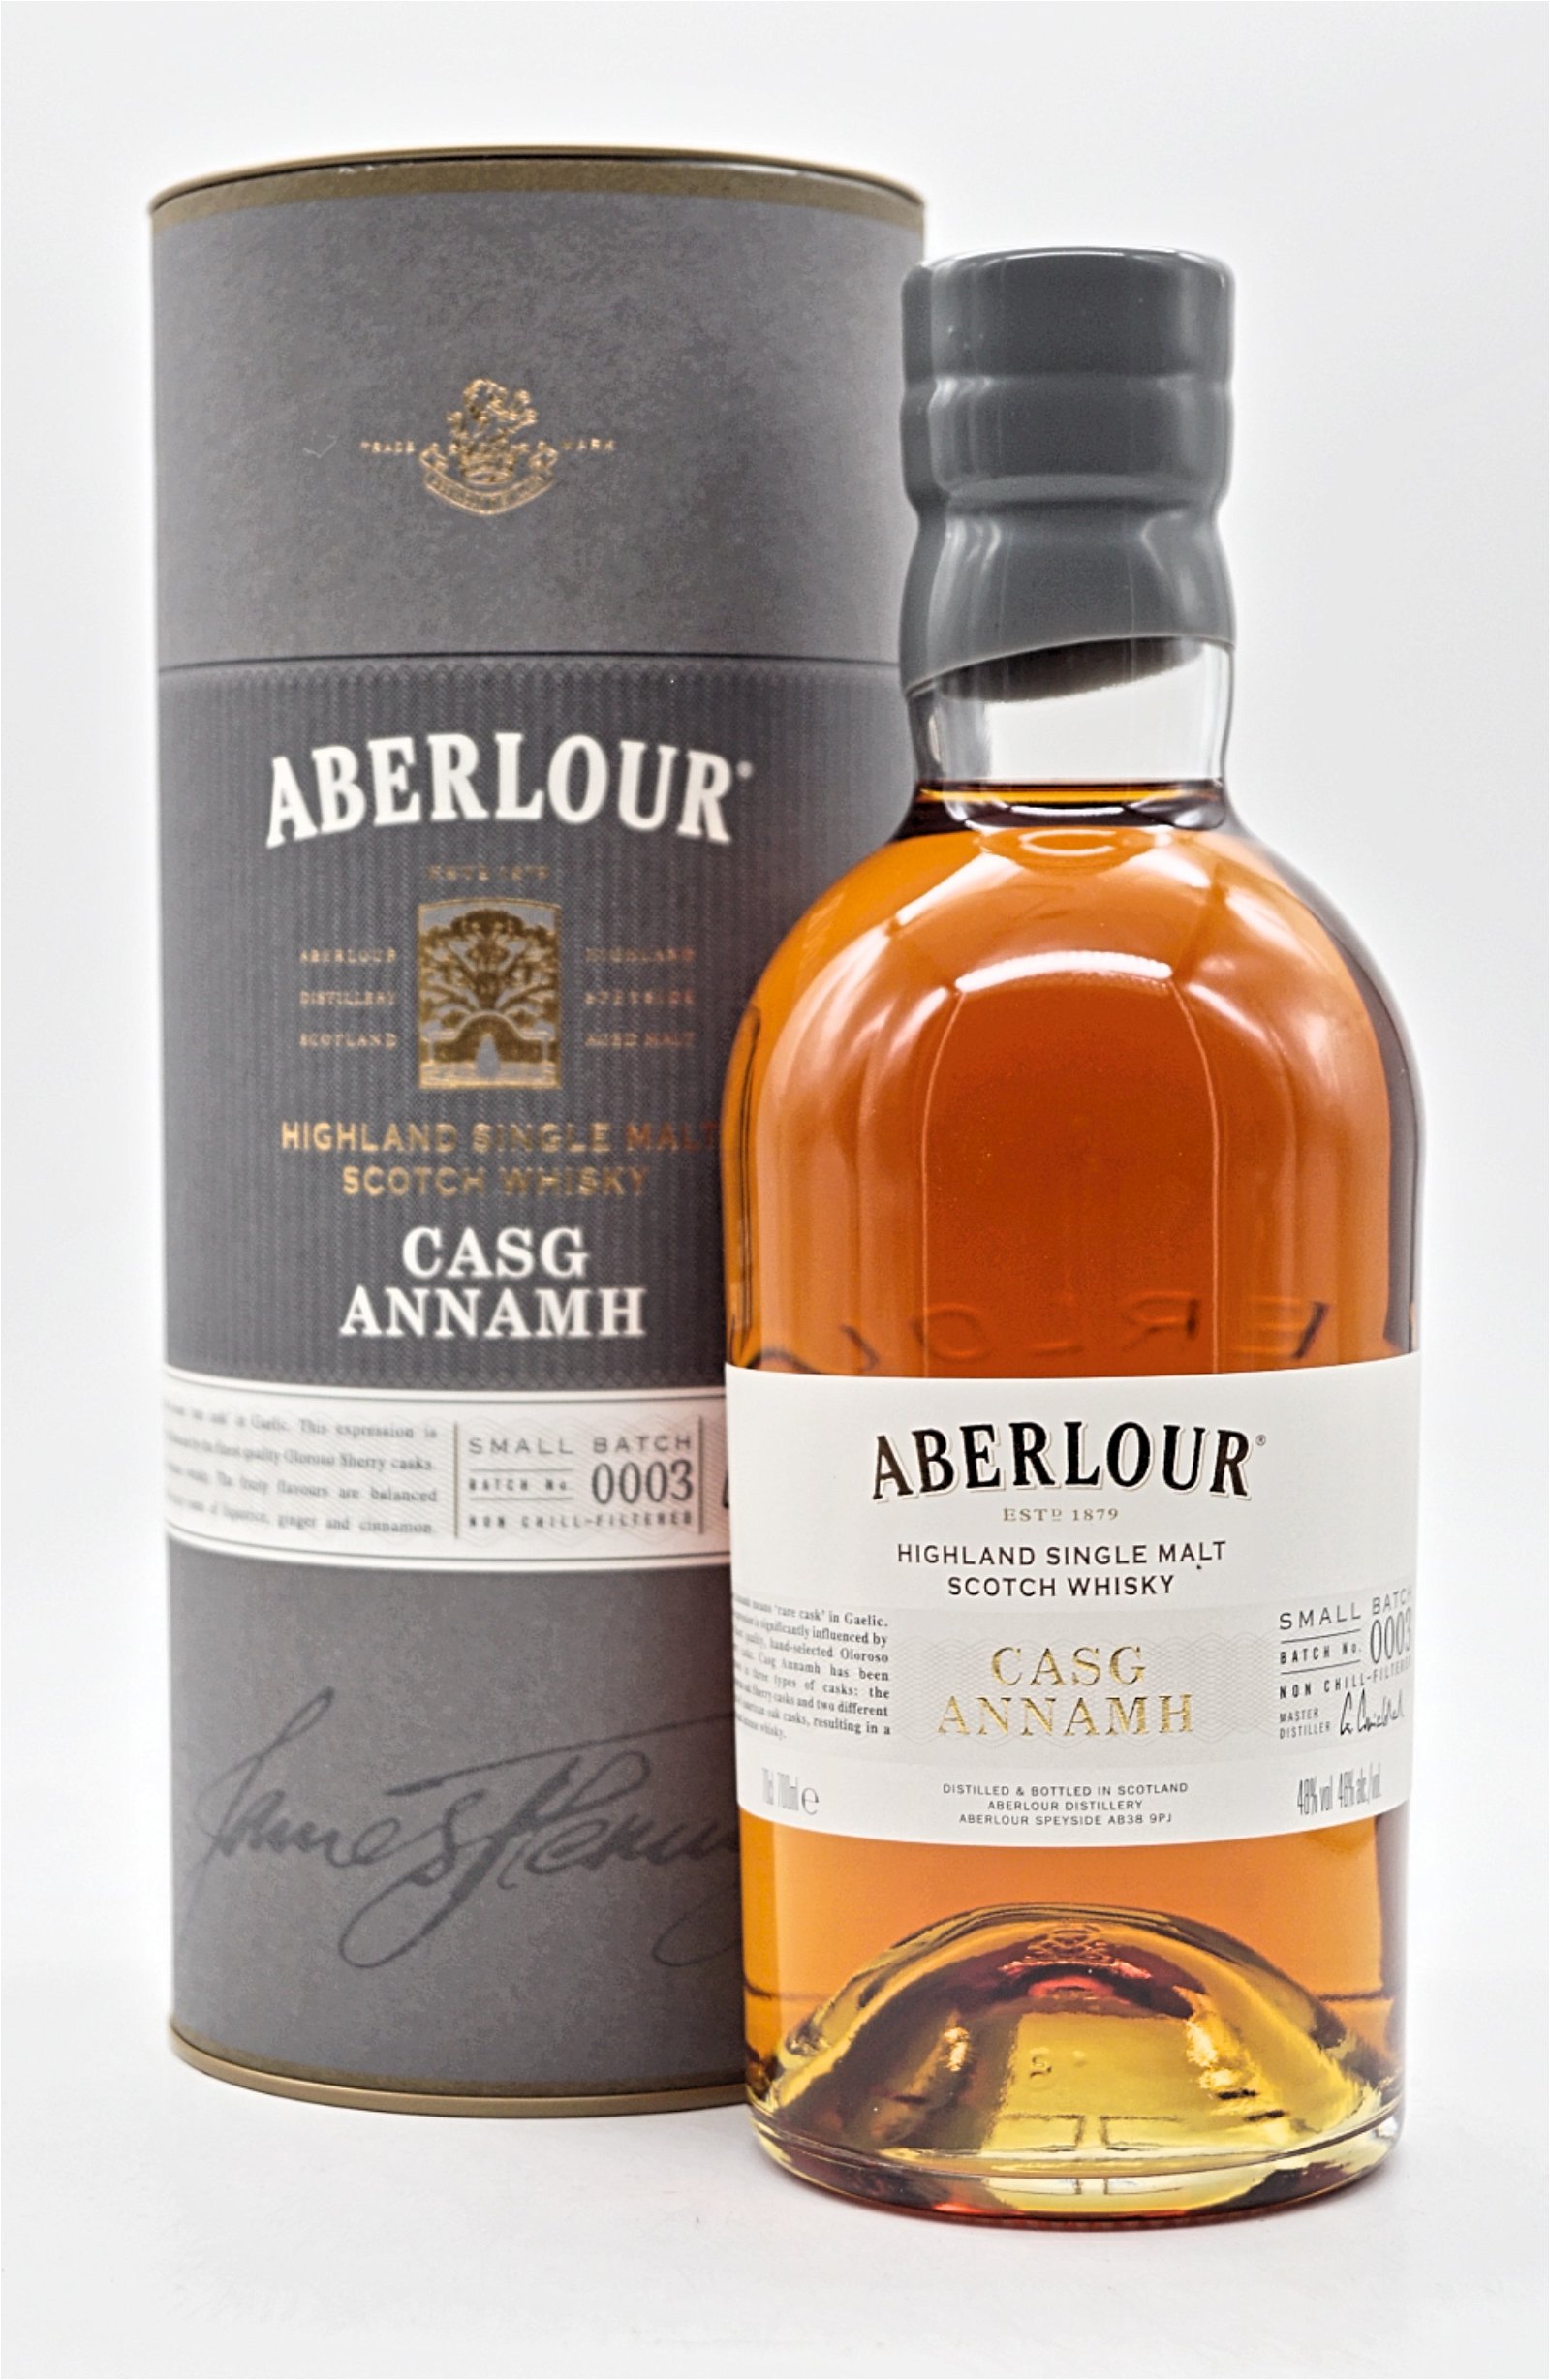 Aberlour Casg Annamh Batch 0003 Highland Single Malt Scotch Whisky